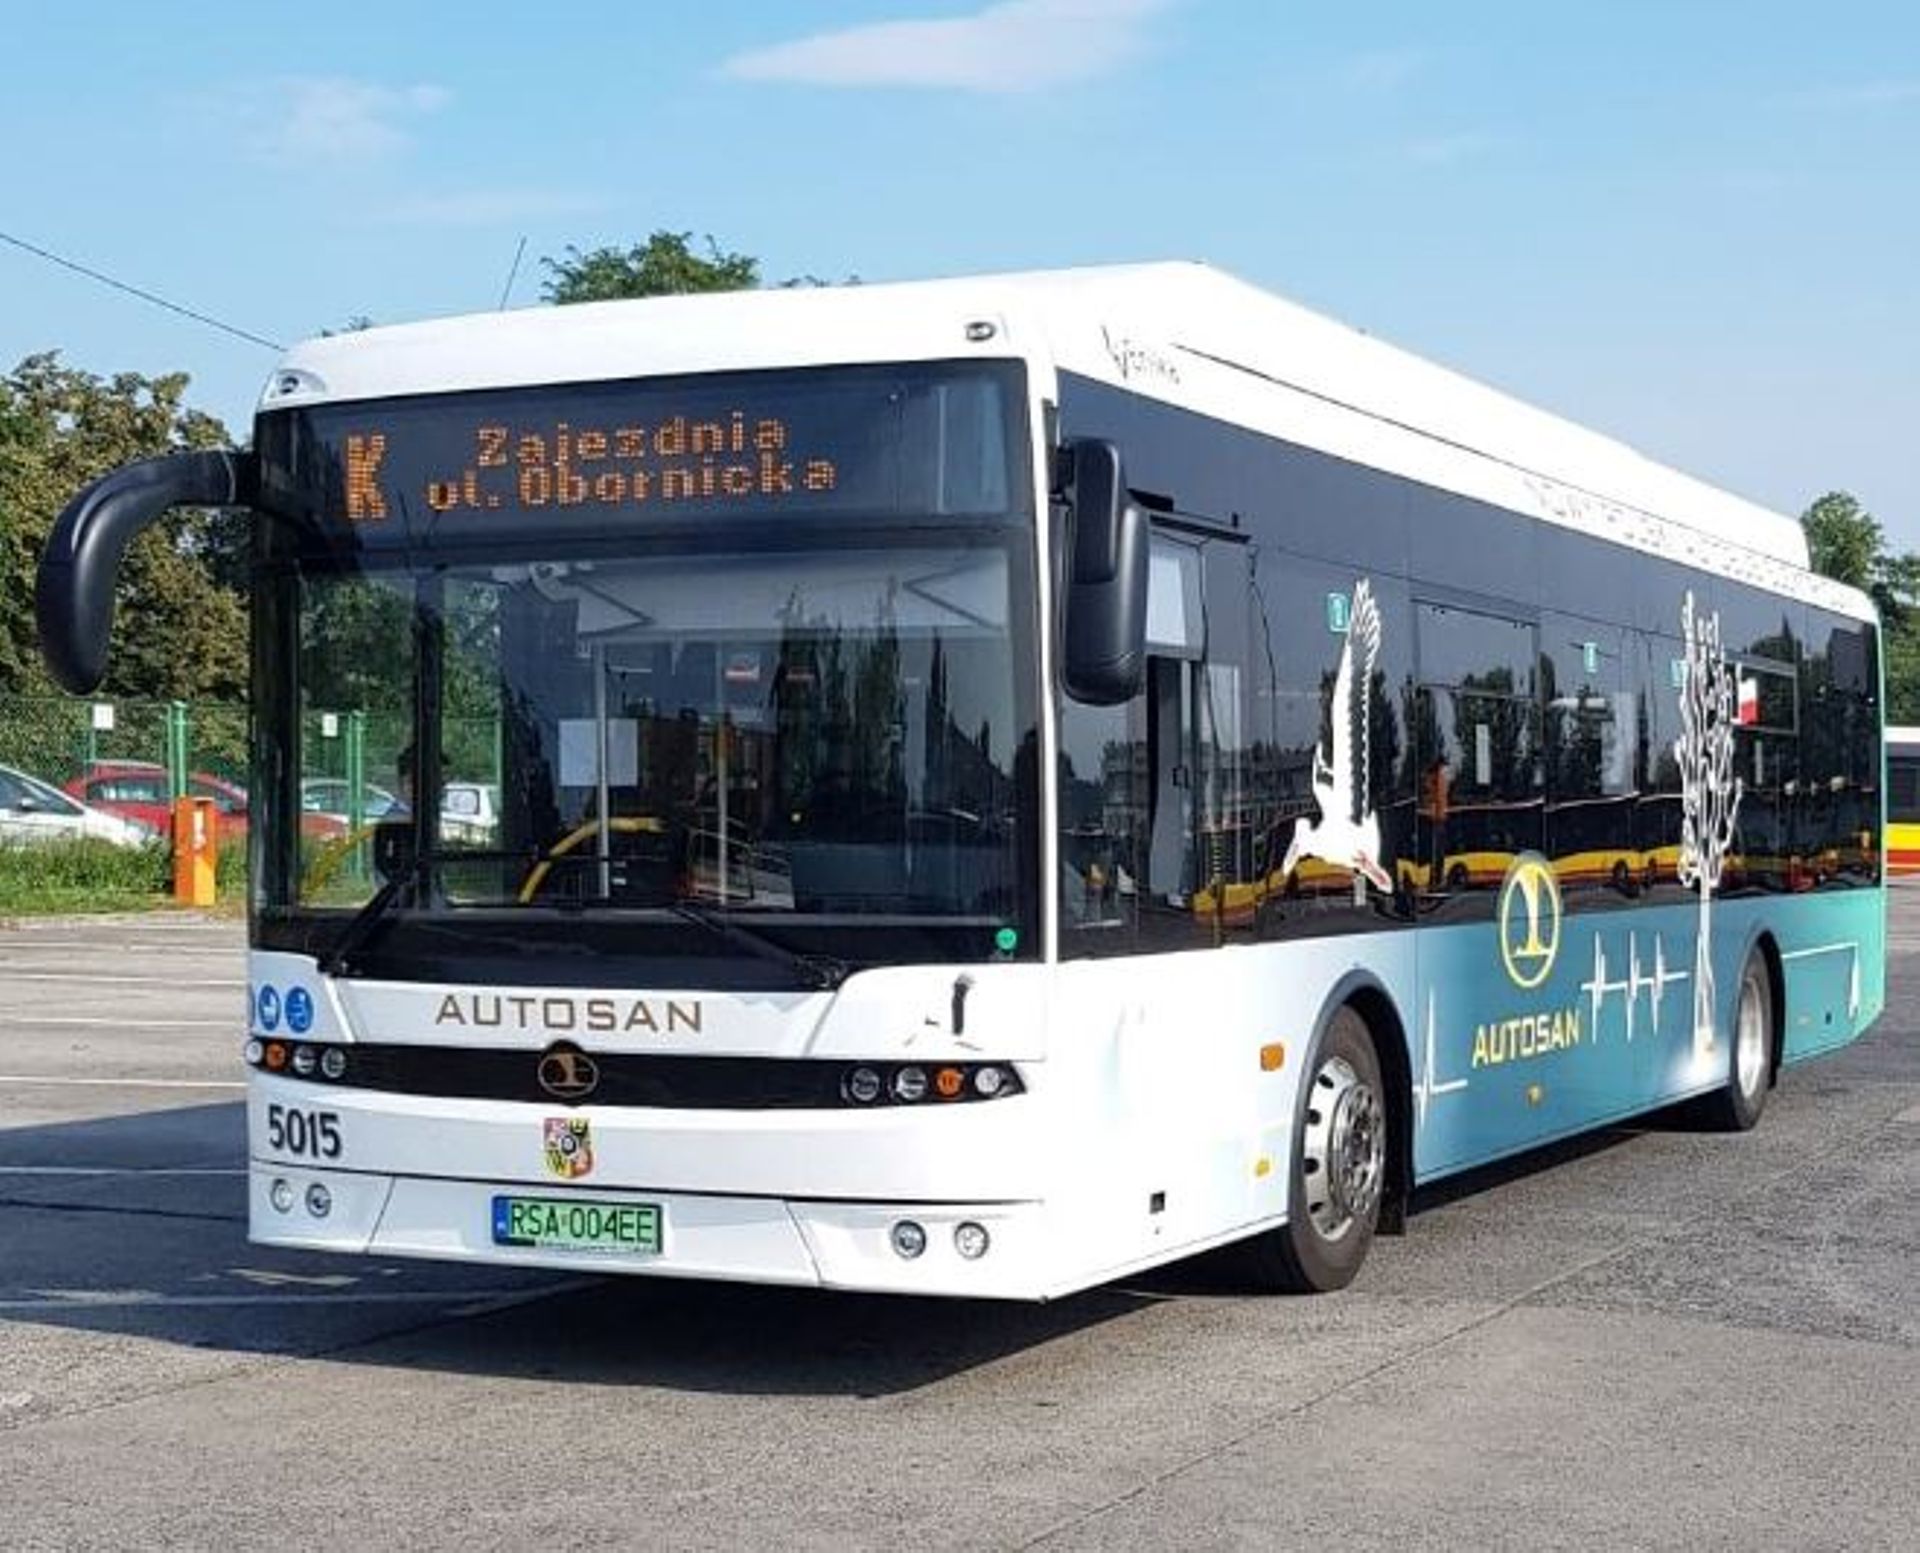 MPK Wrocław jest zainteresowane zakupem elektrycznych autobusów